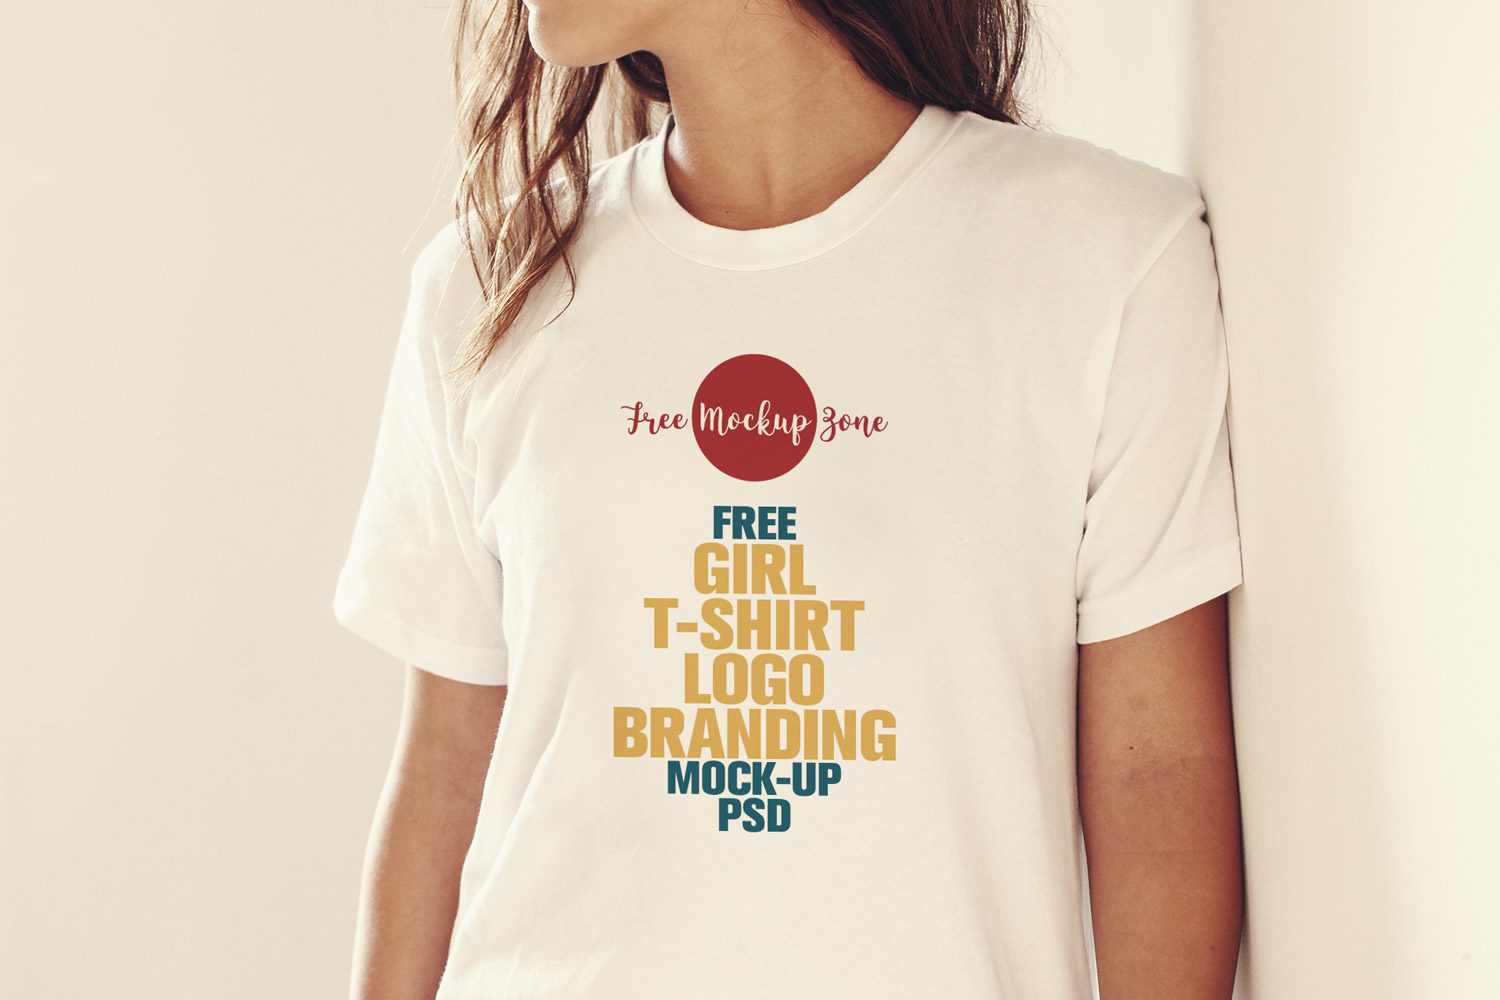 Download Free Girl T-Shirt Mockup | Free Mockup